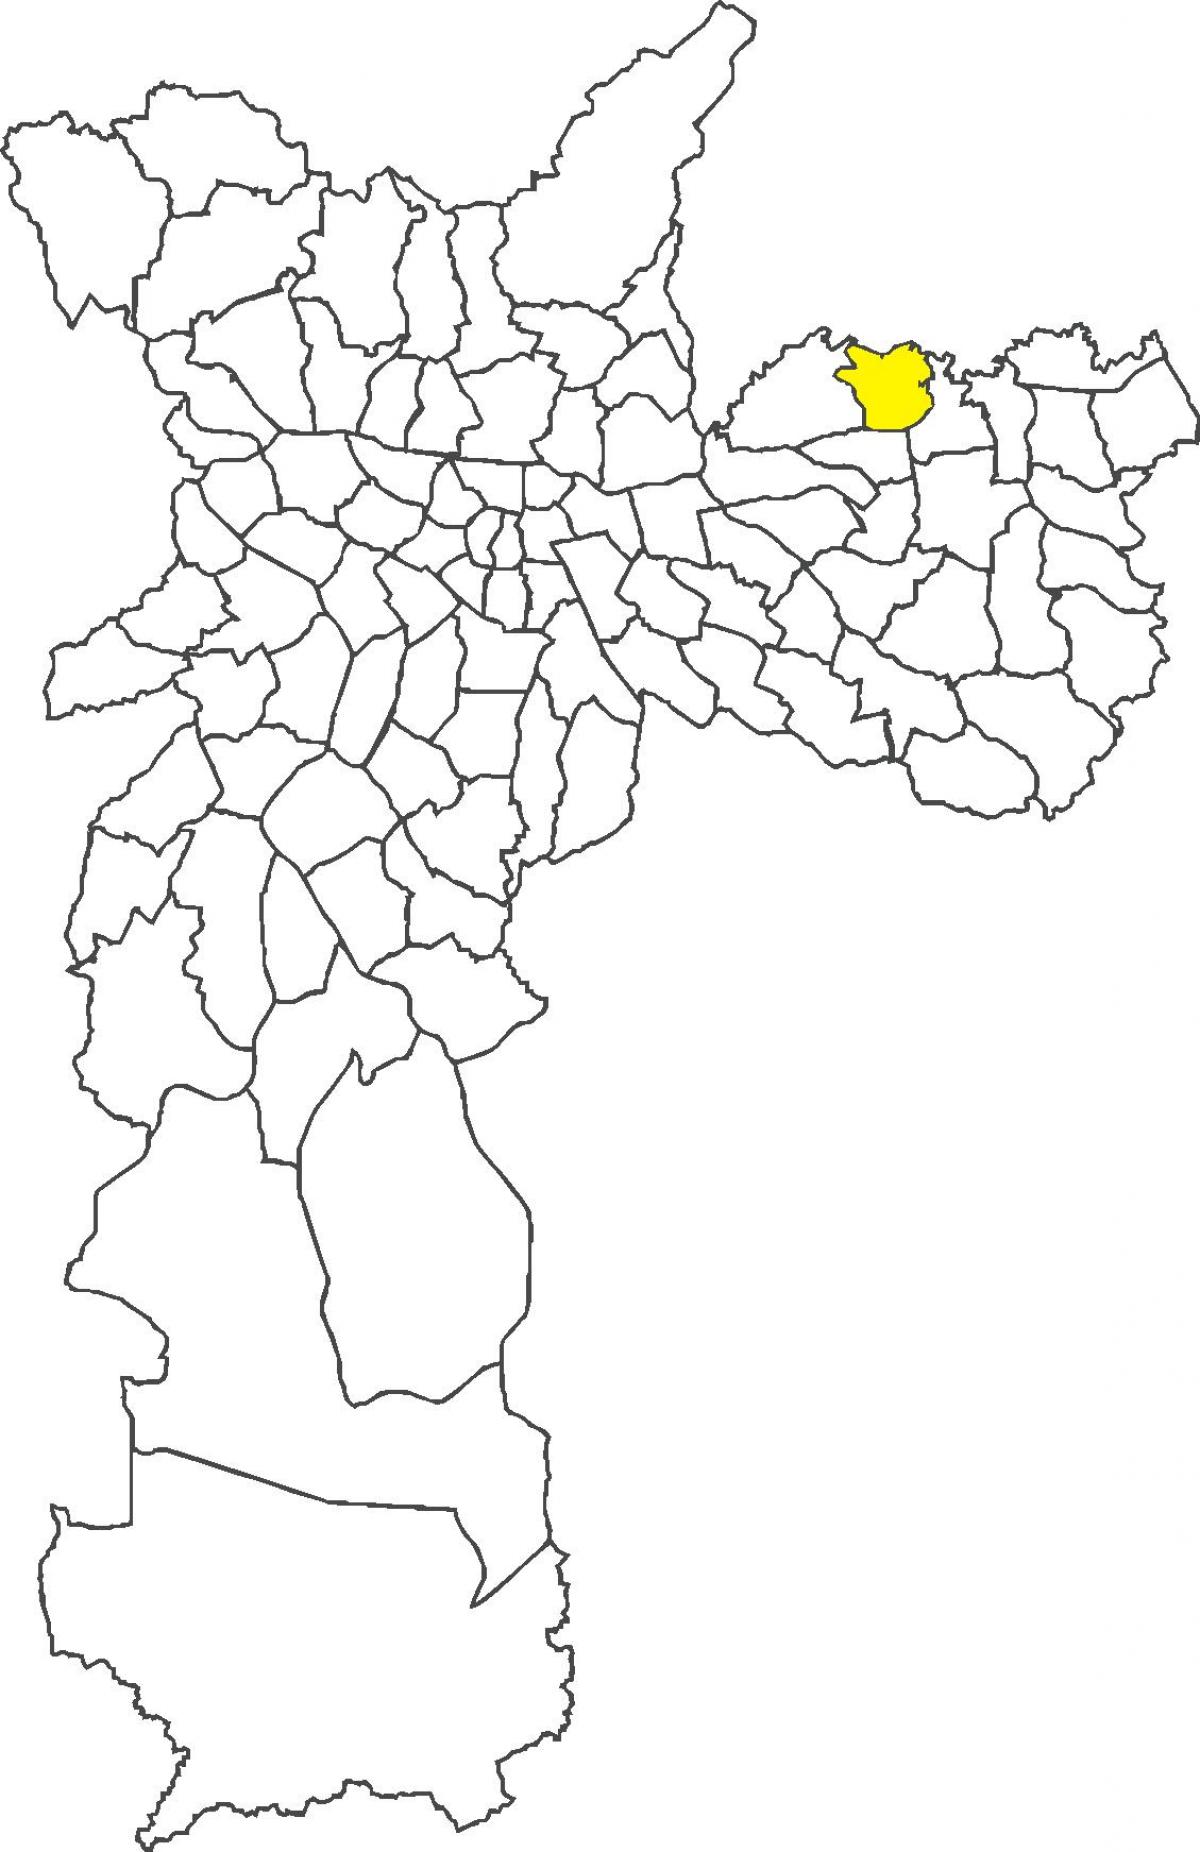 Harta e Ermelino Matarazzo qarkut